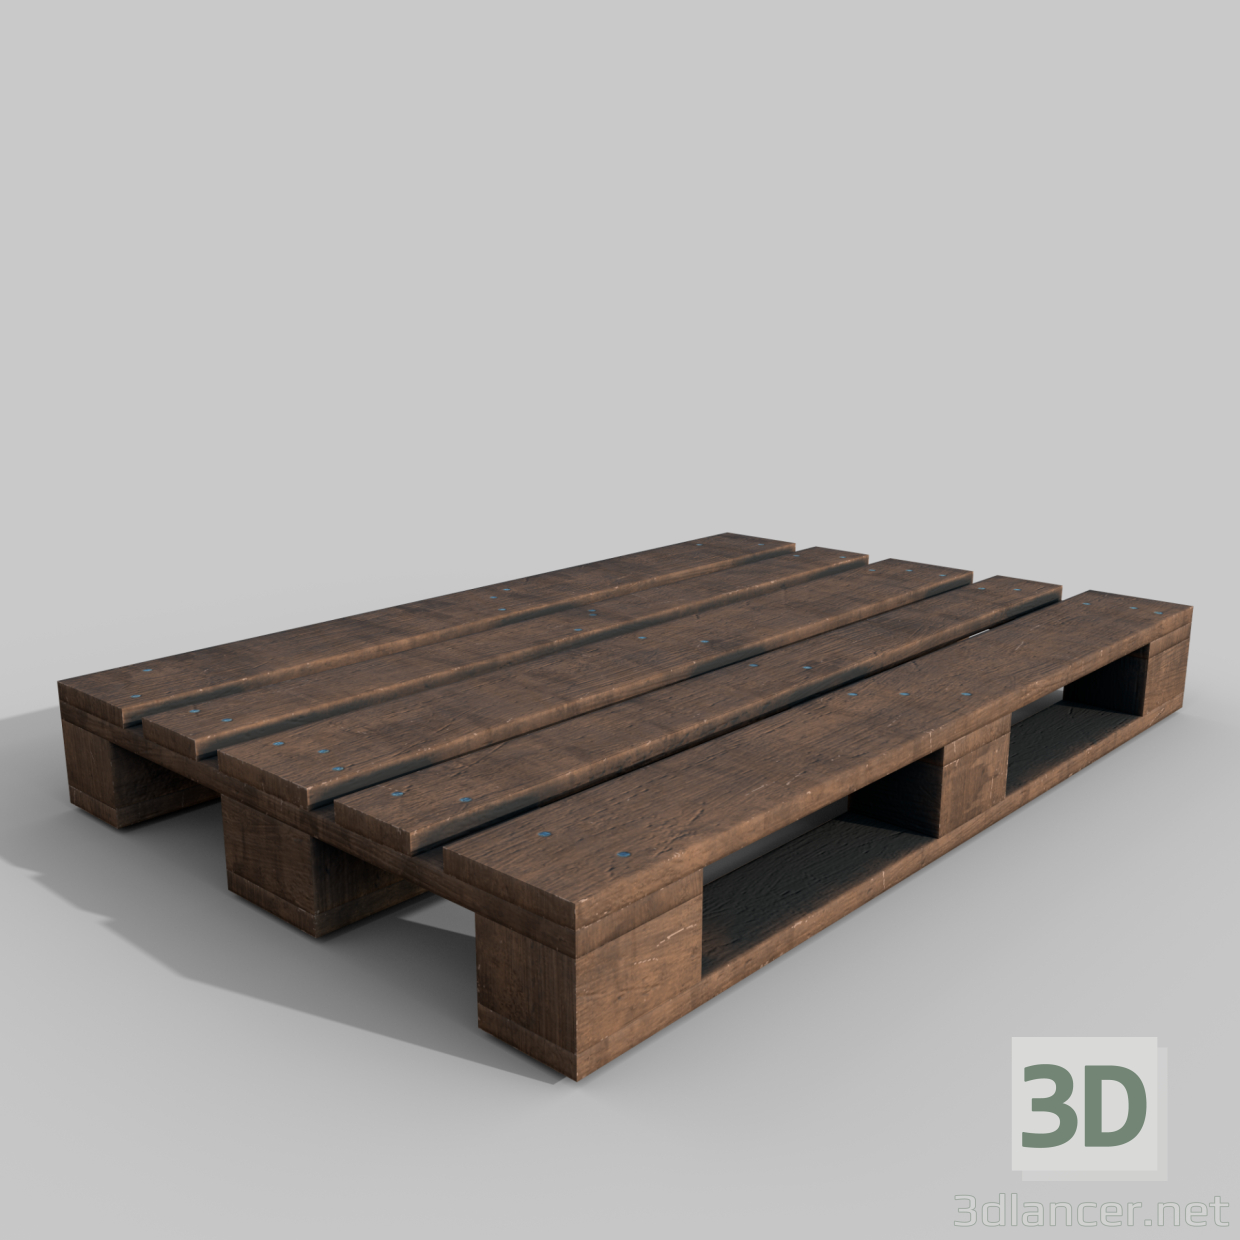 Holzpalette 3D-Modell kaufen - Rendern